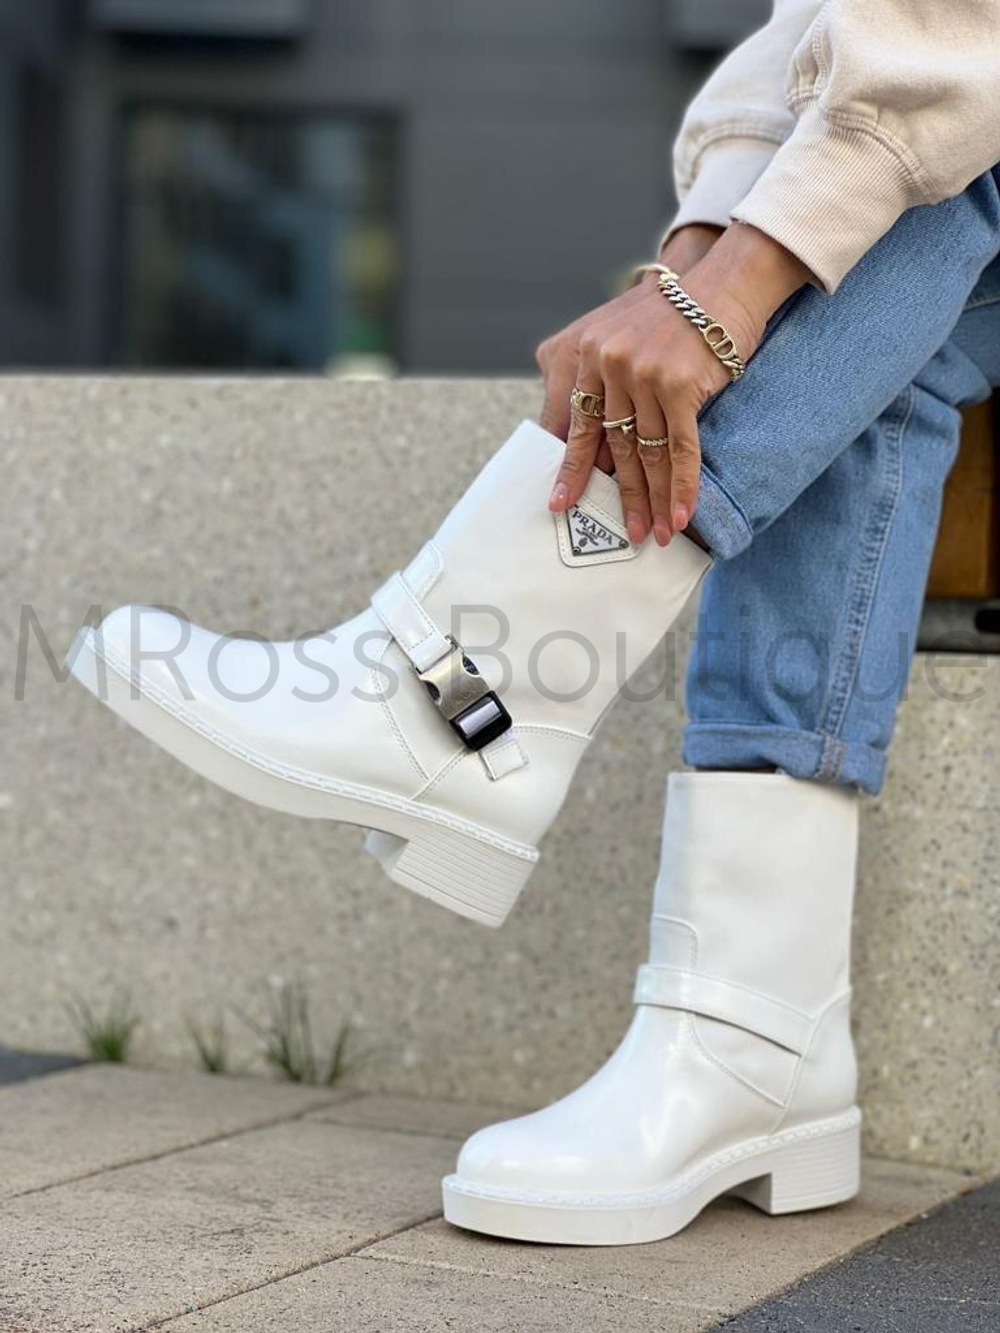 Женские белые ботинки Prada (Прада) люкс класса с кожаным низом и нейлоновым широким верхом с пряжкой у основания голени.